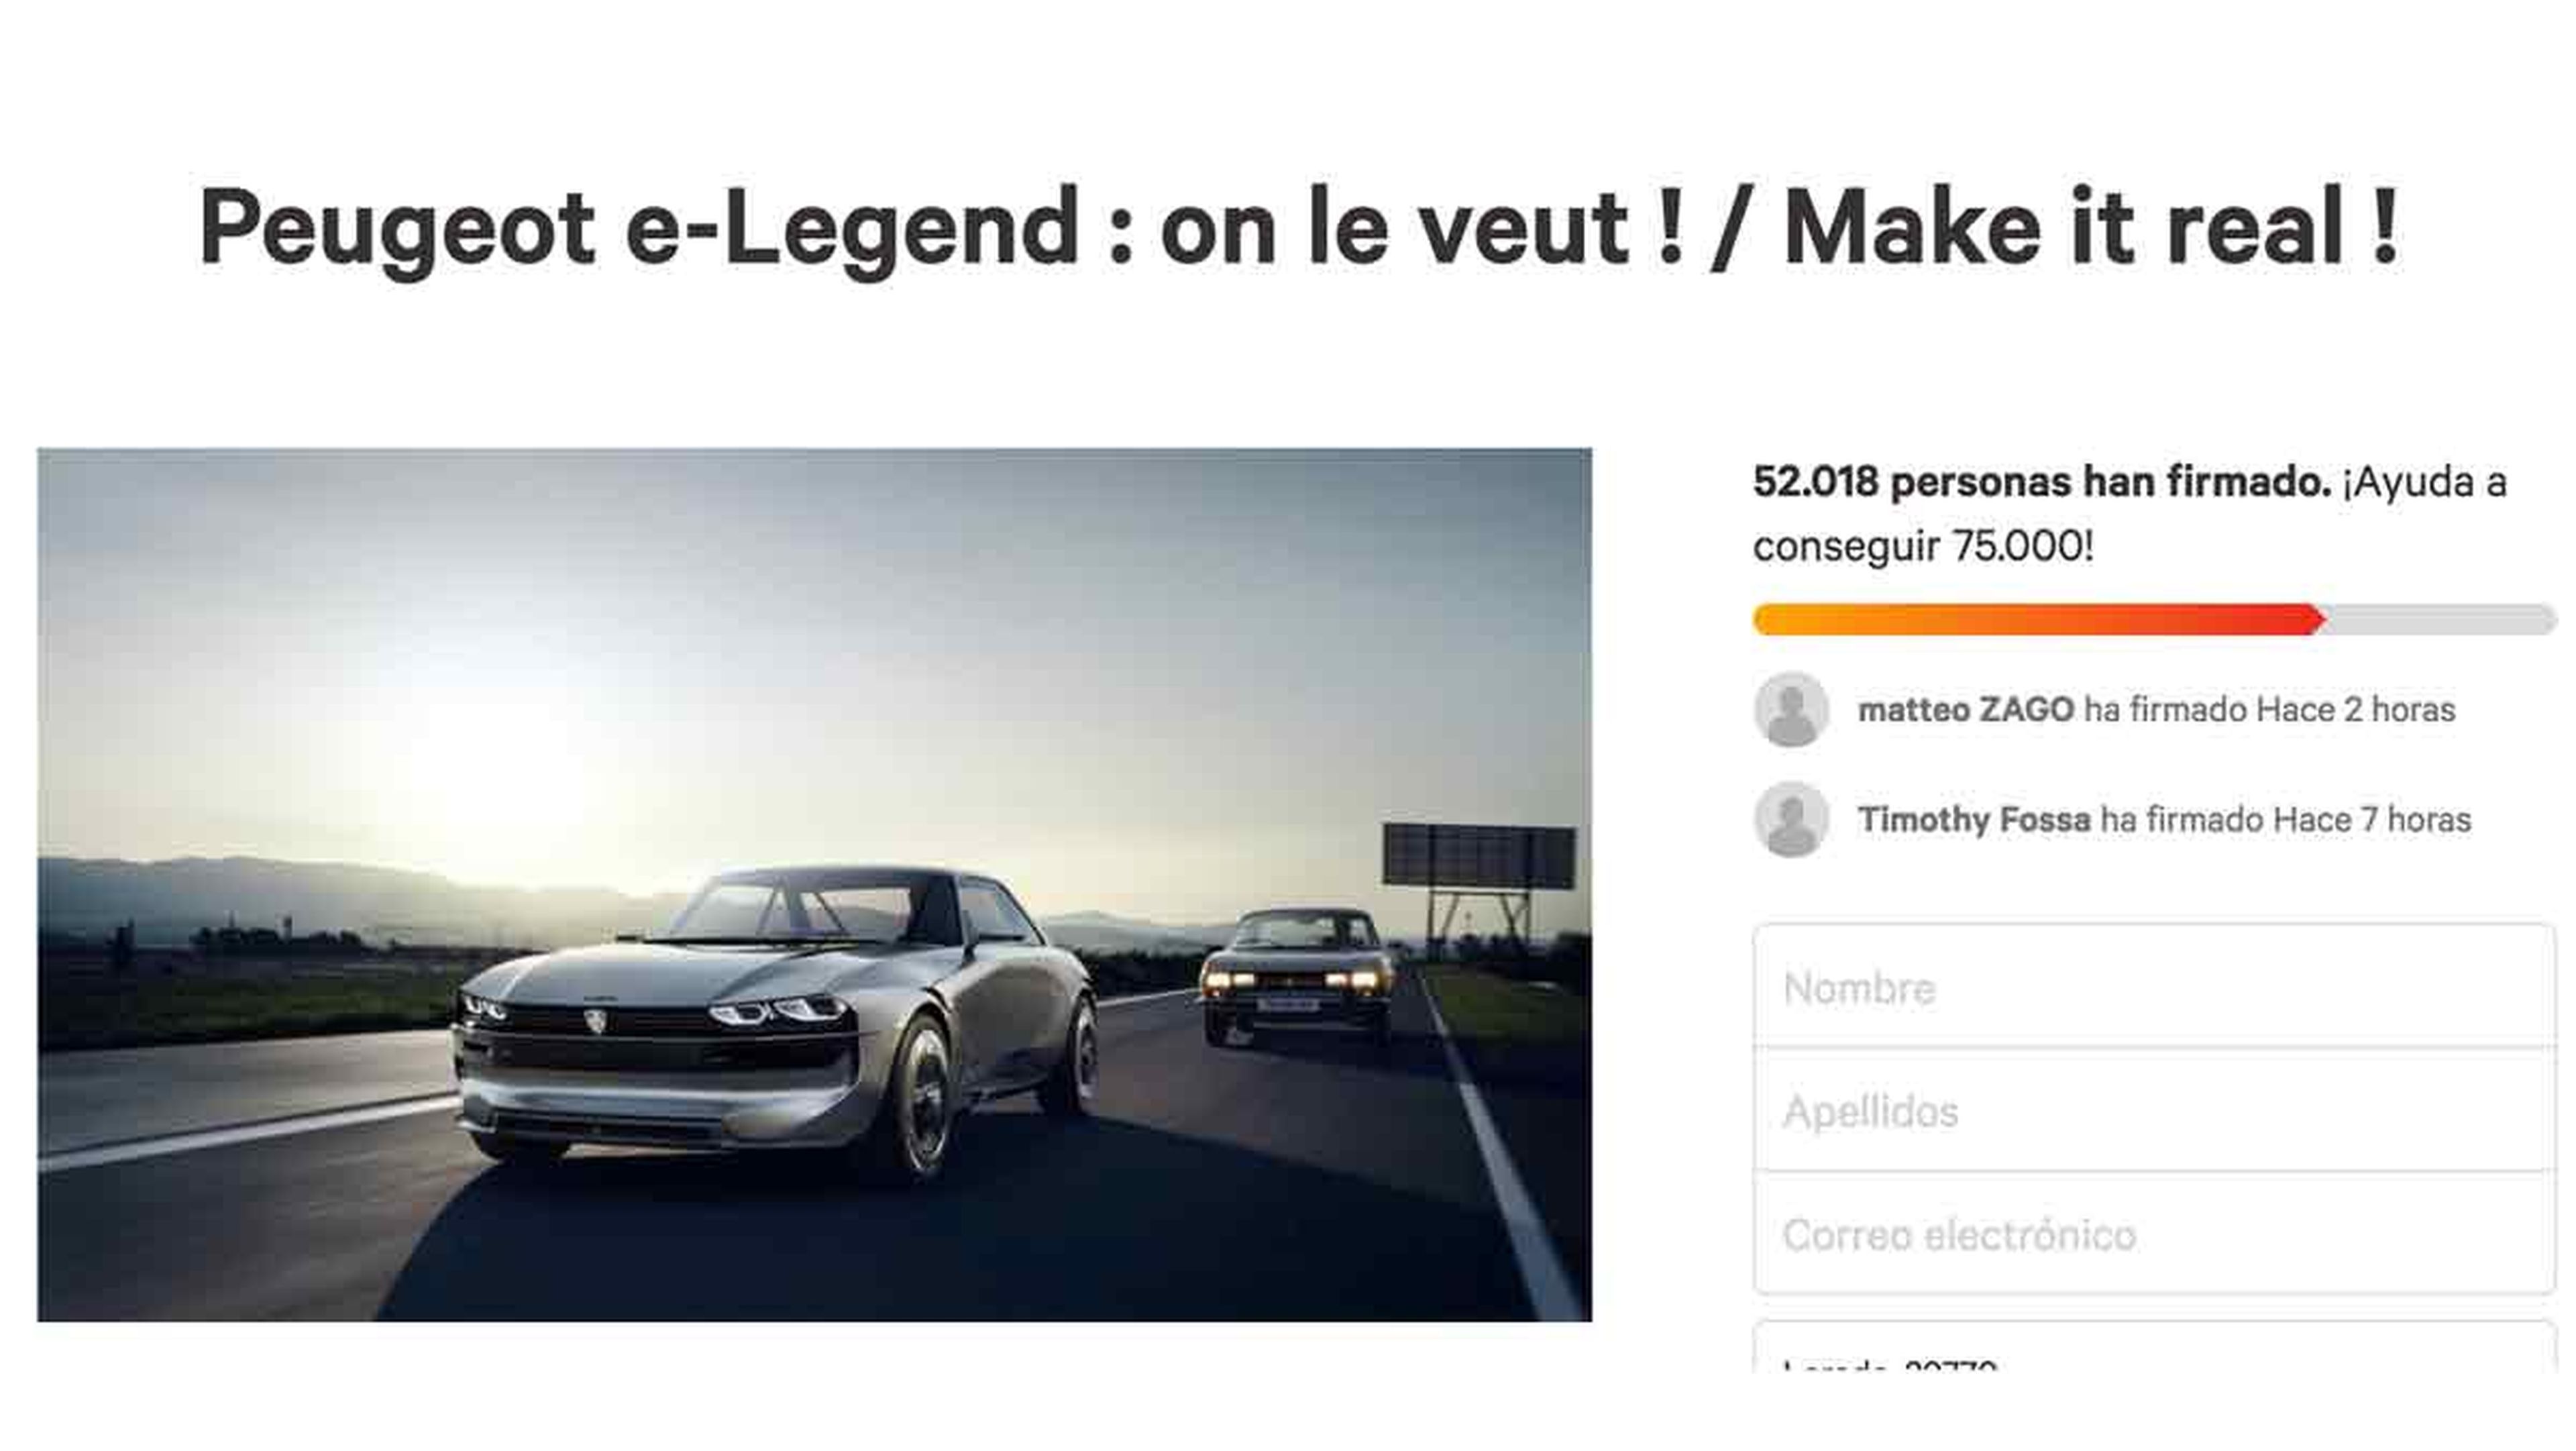 Petición Peugeot e-Legend